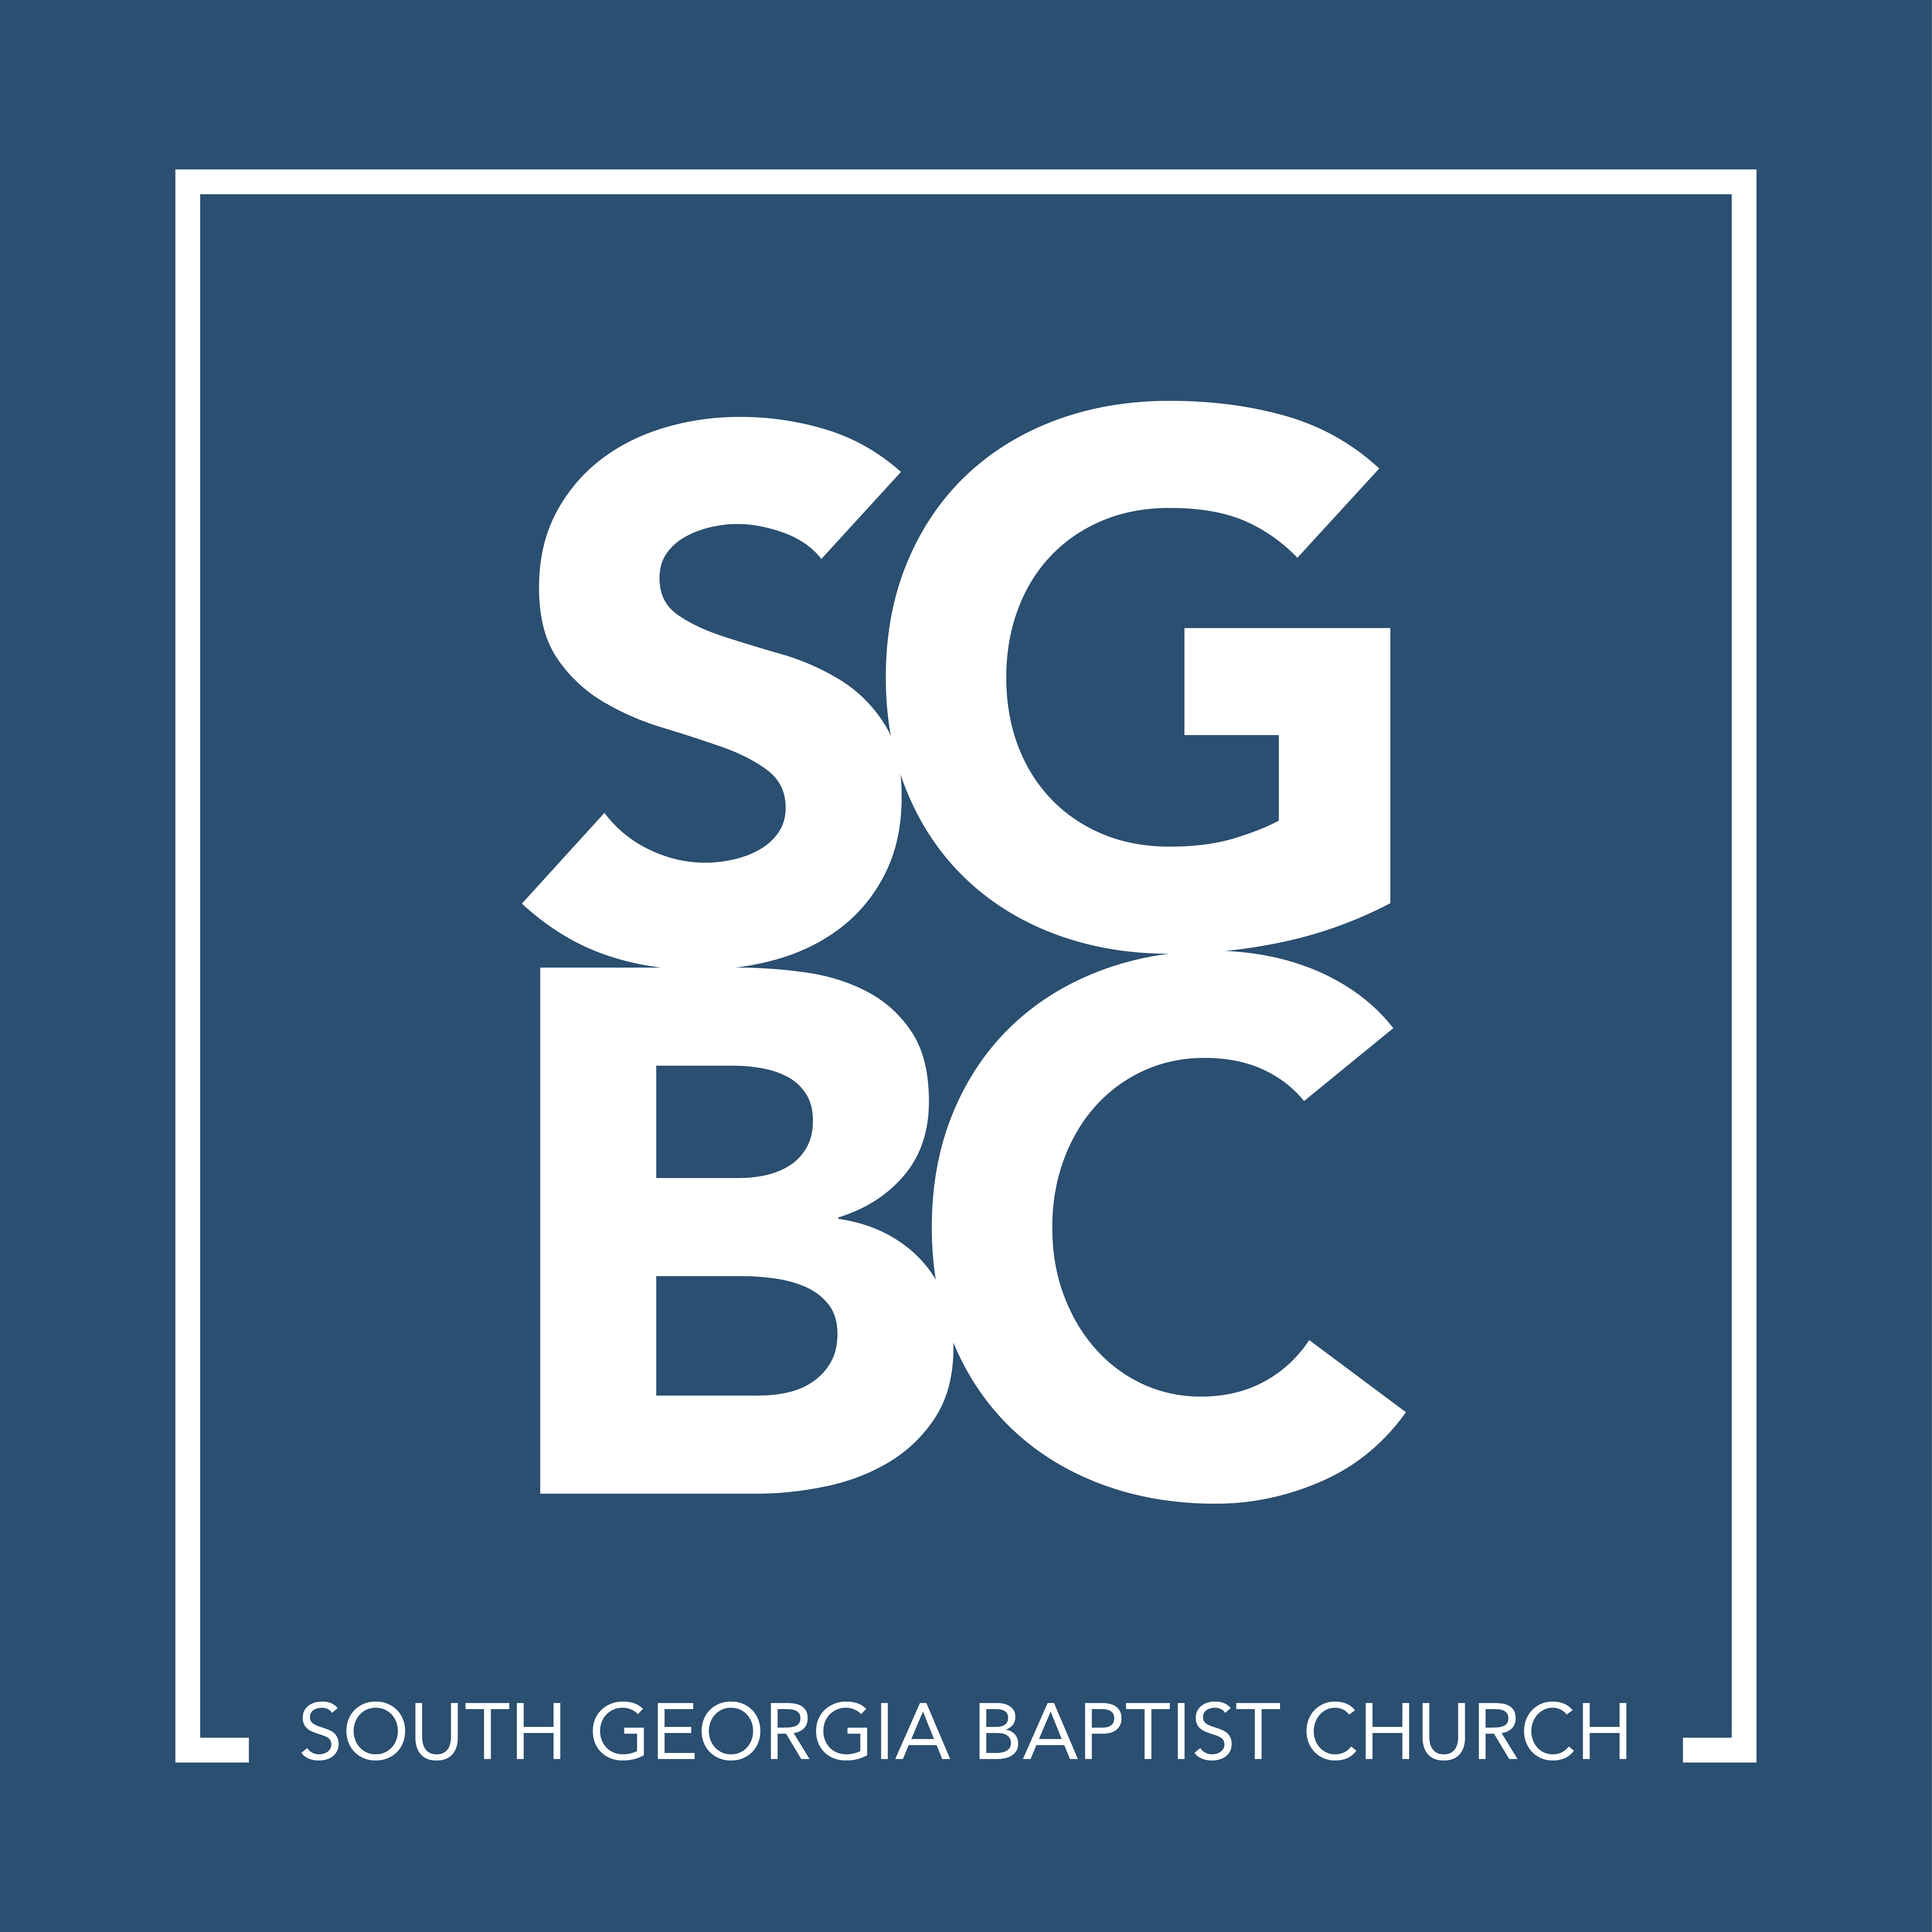 South Georgia Baptist Church